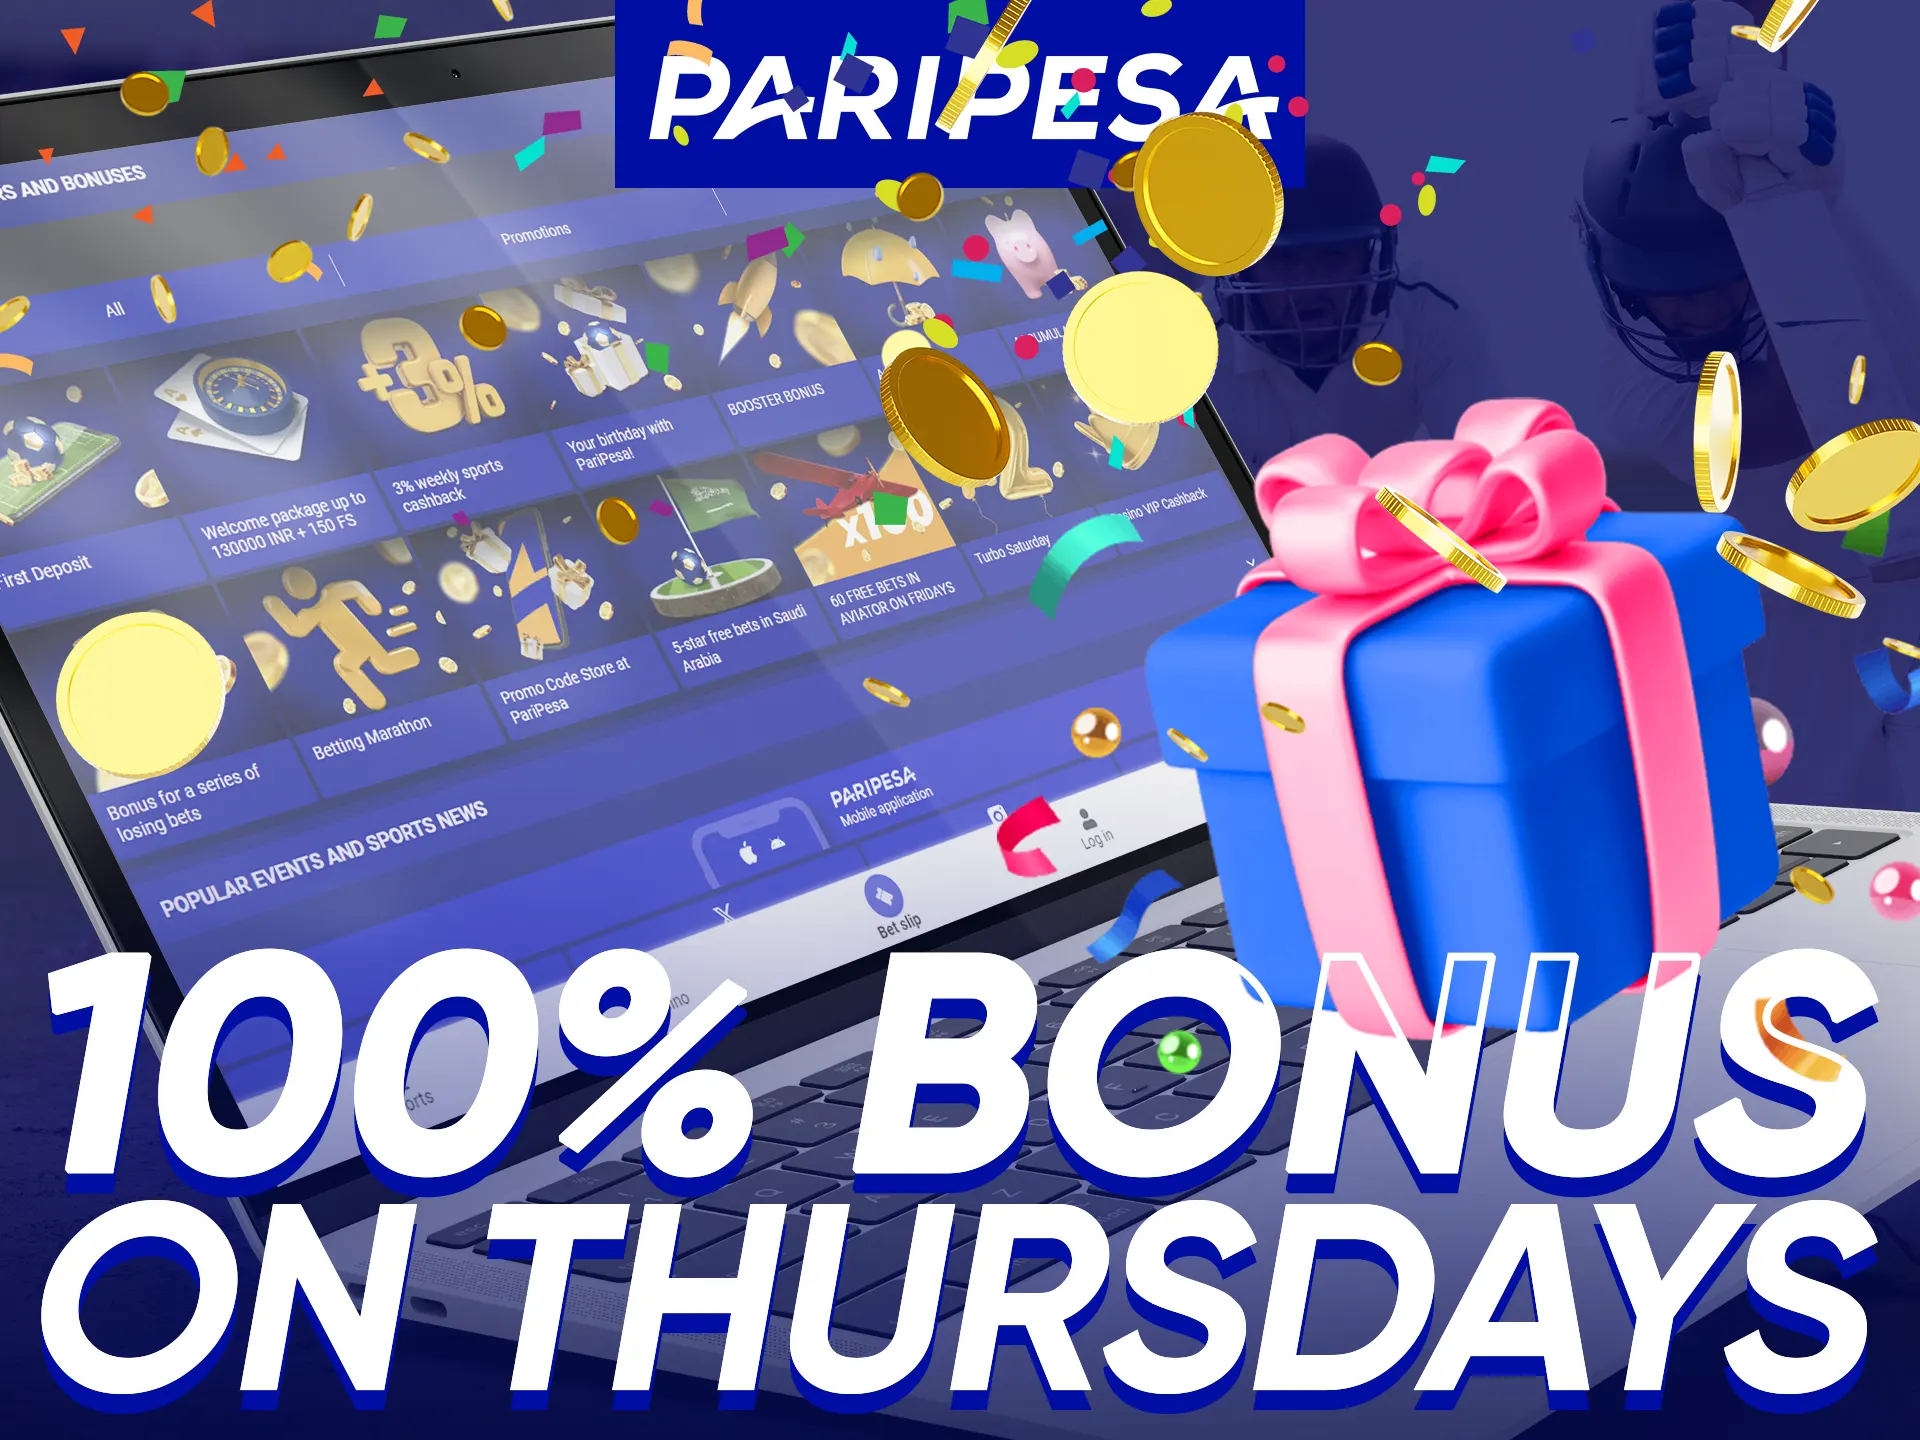 Thursdays offer a 100% bonus for deposits of 10-100 EUR, only at Paripesa.